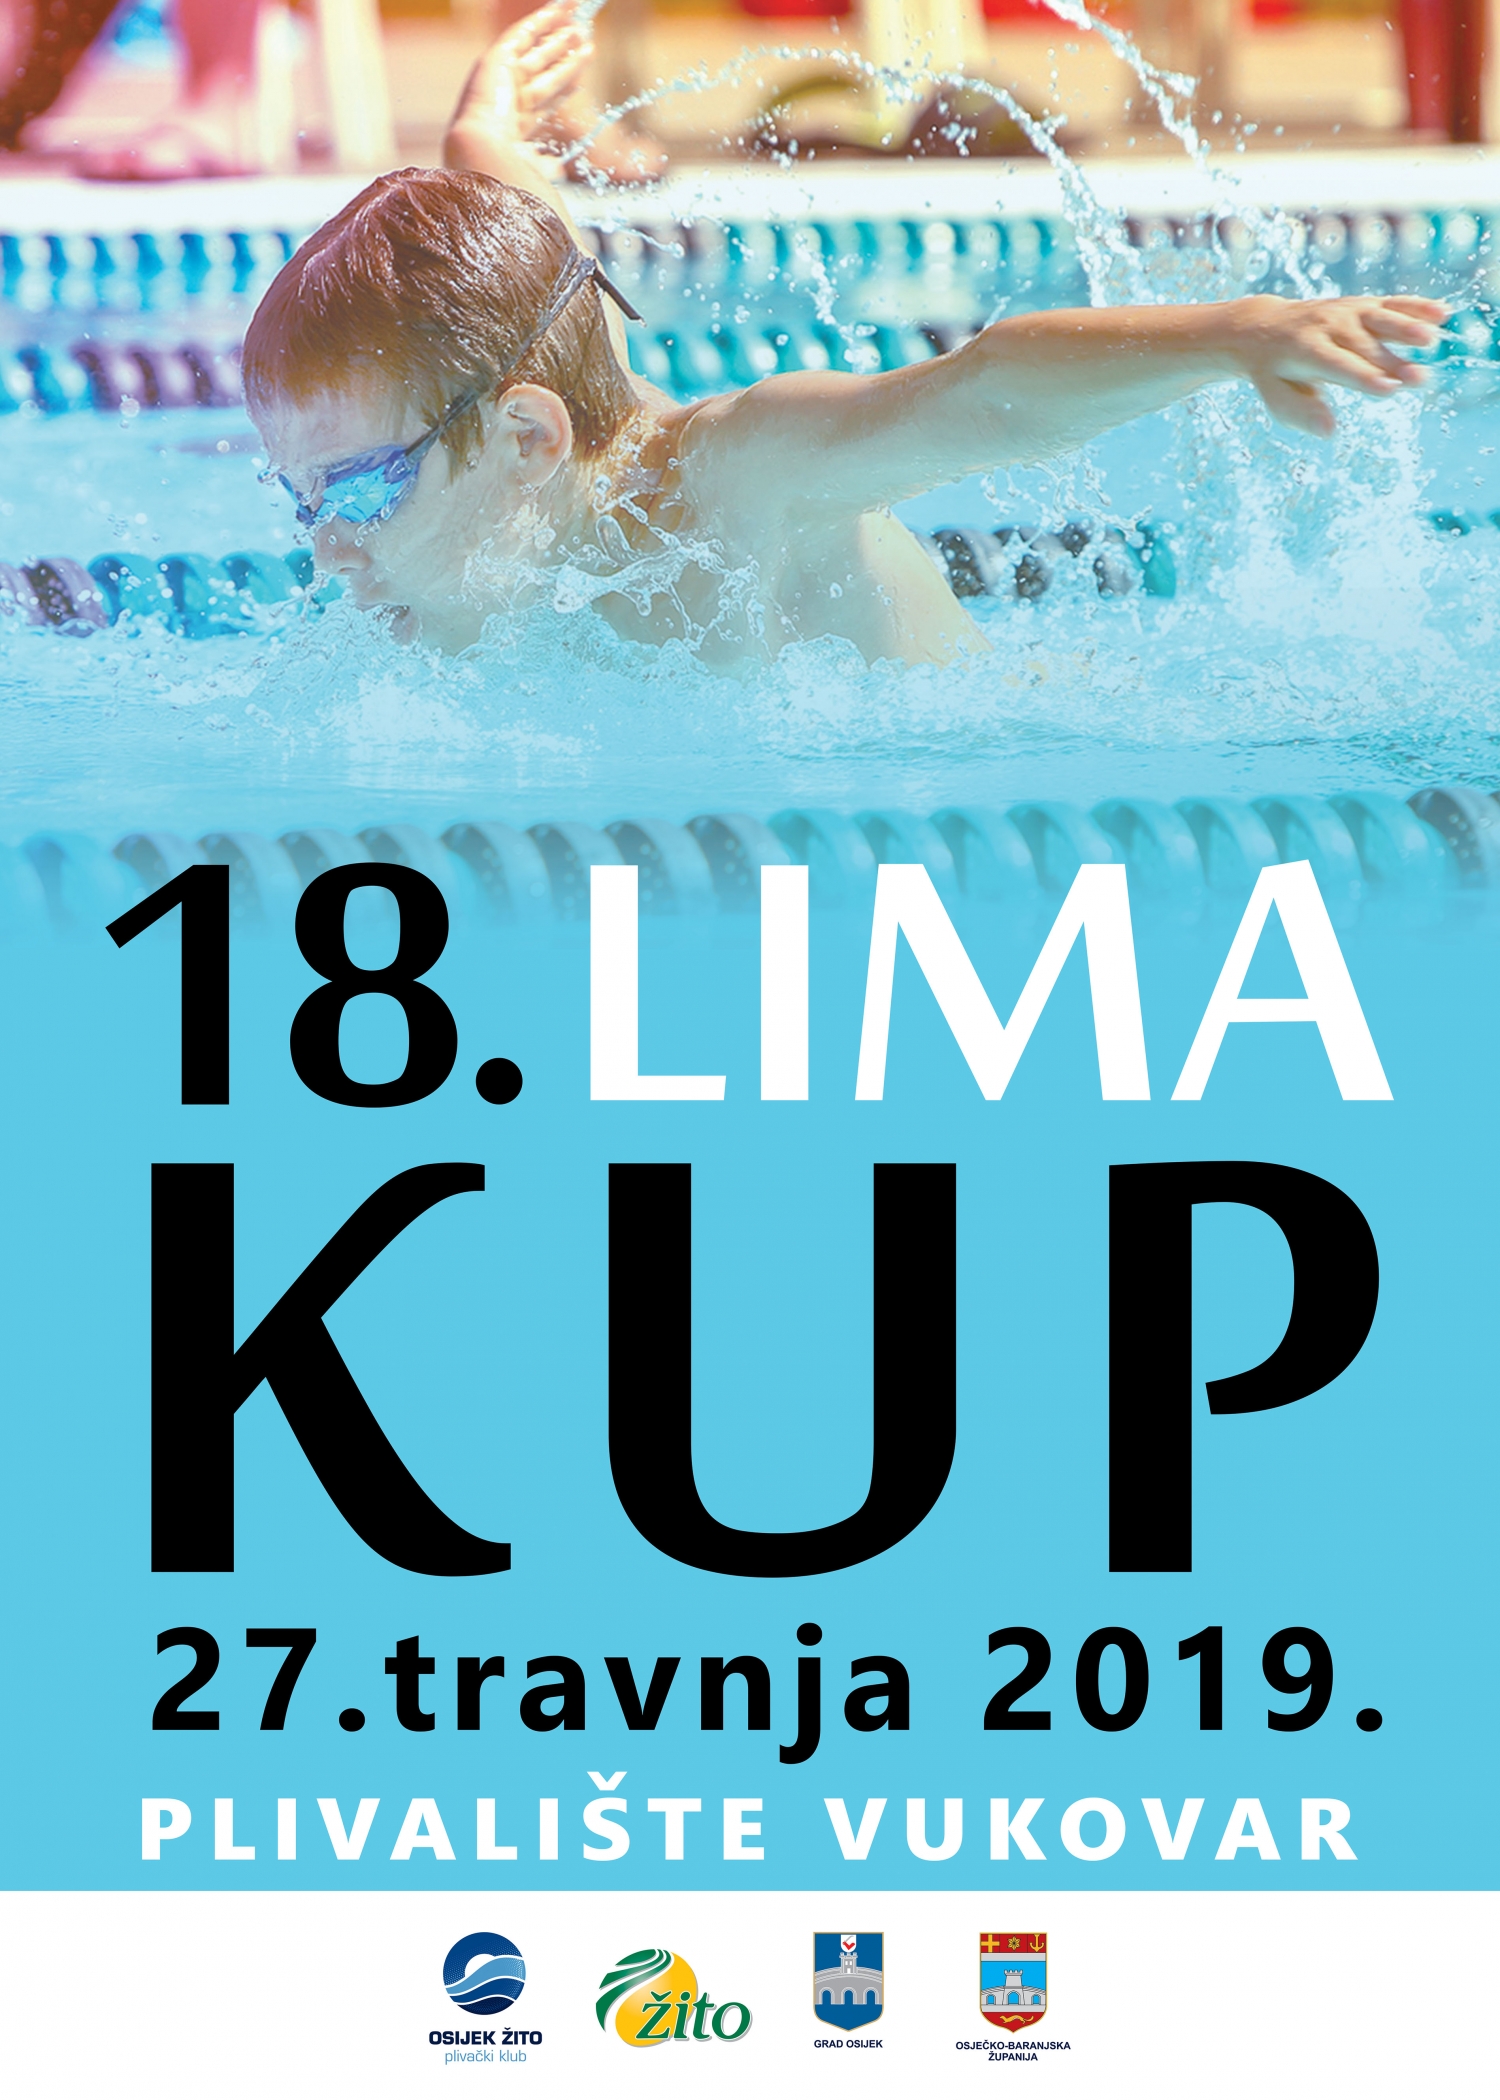 18. Lima kup, Vukovar 27.04.2019.